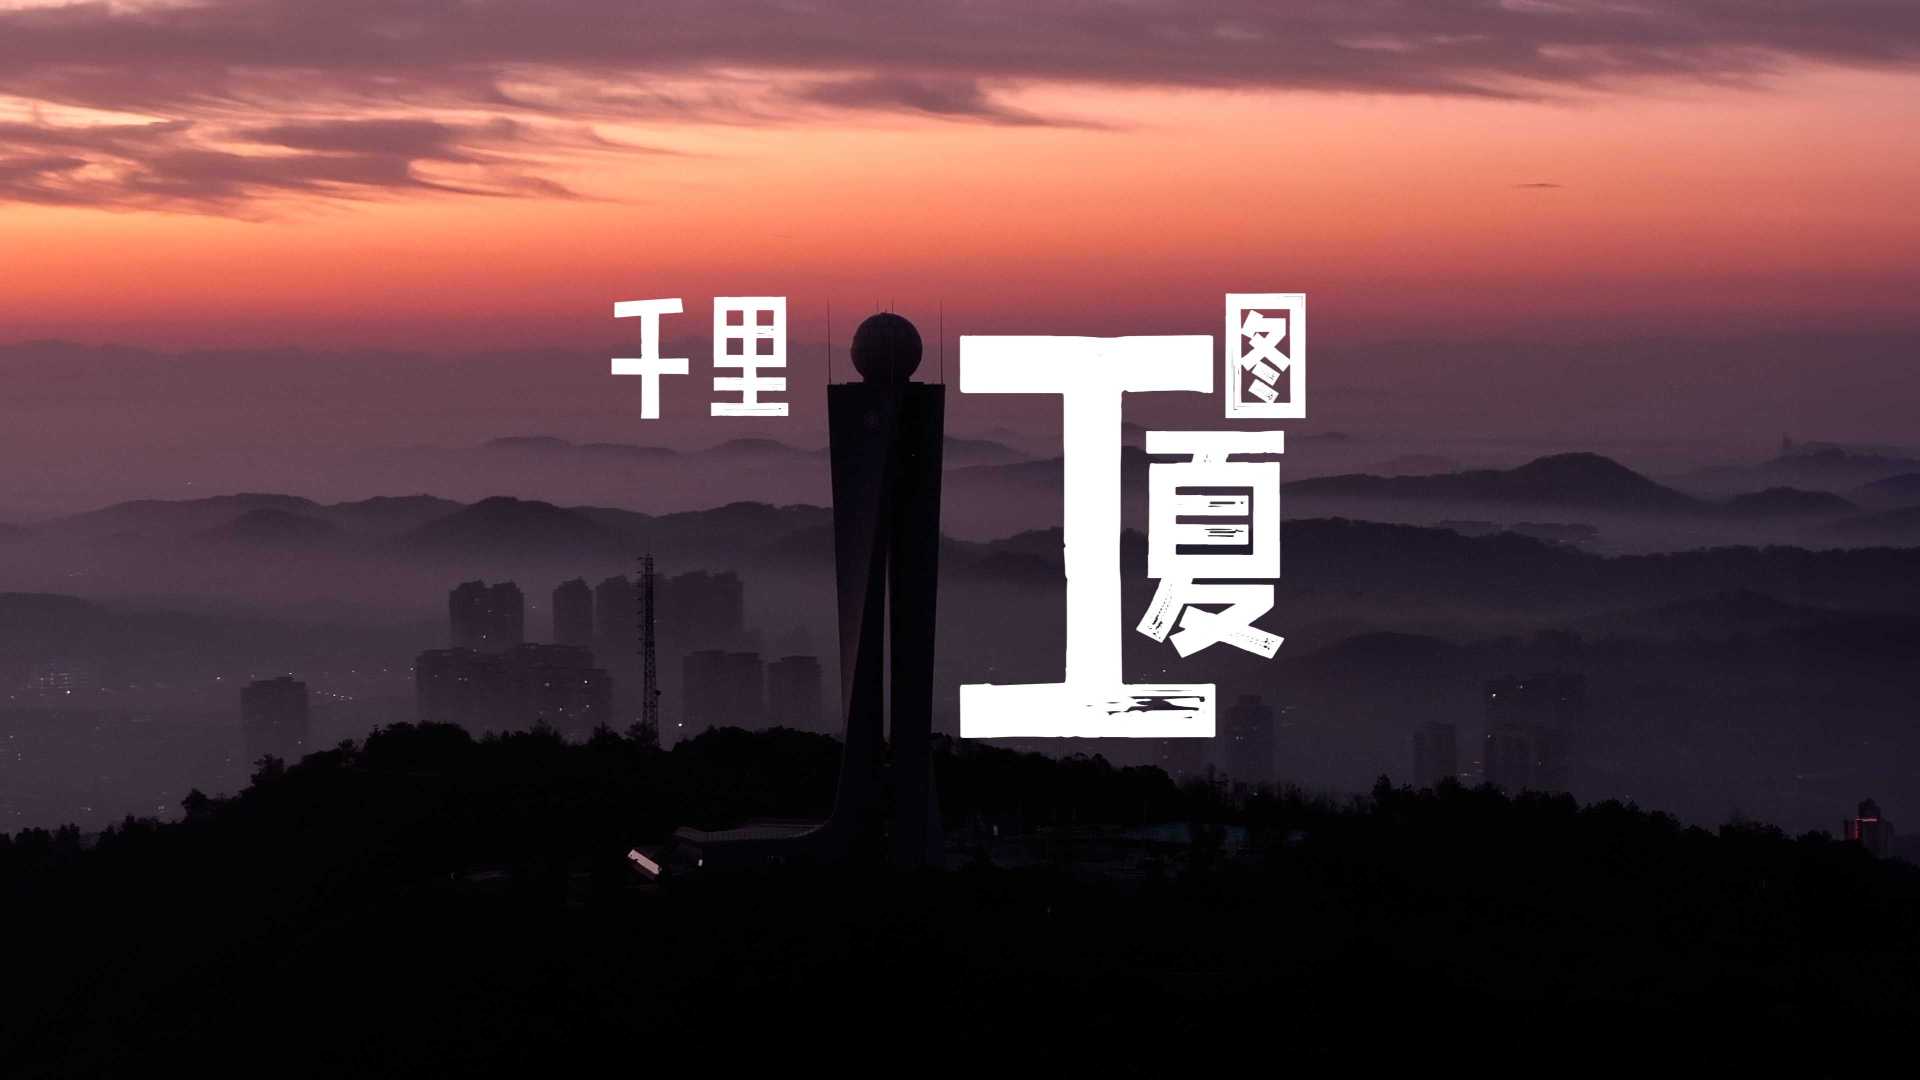 这是一幅属于武汉江夏的“千里江山图”